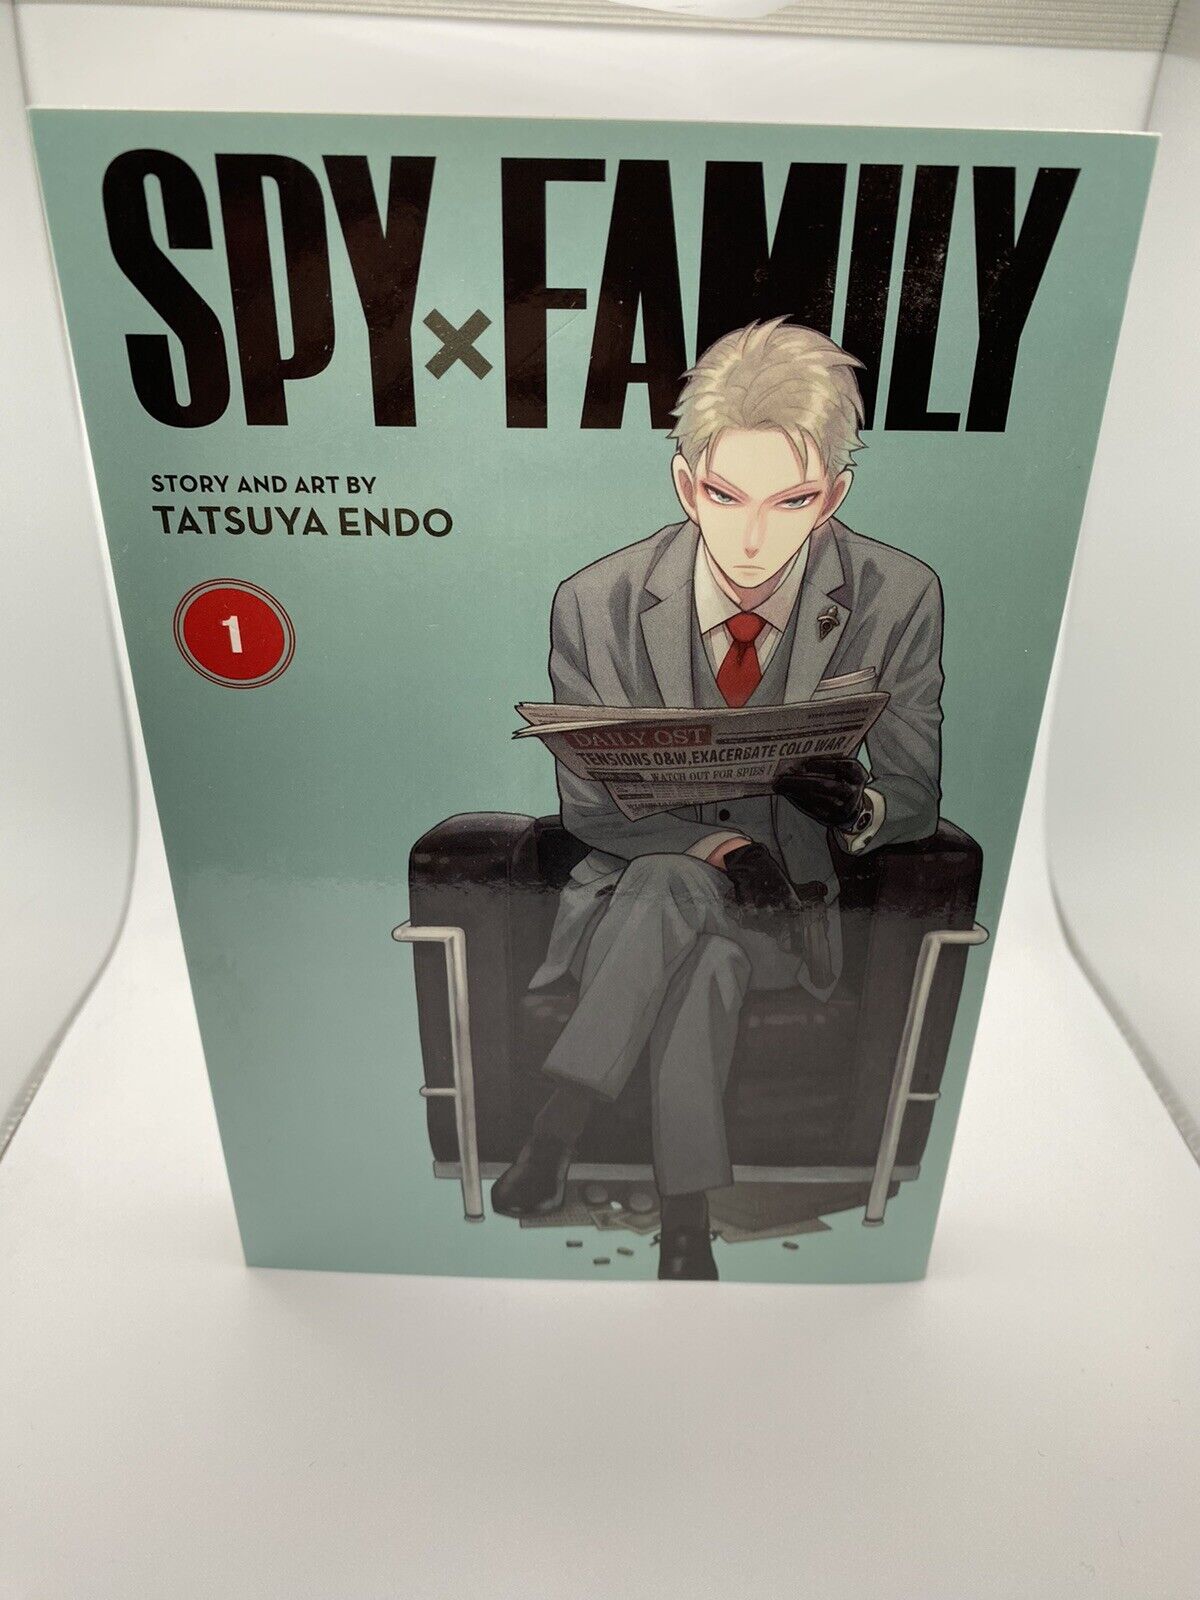 Spy x Family #1 (Viz, June 2020)